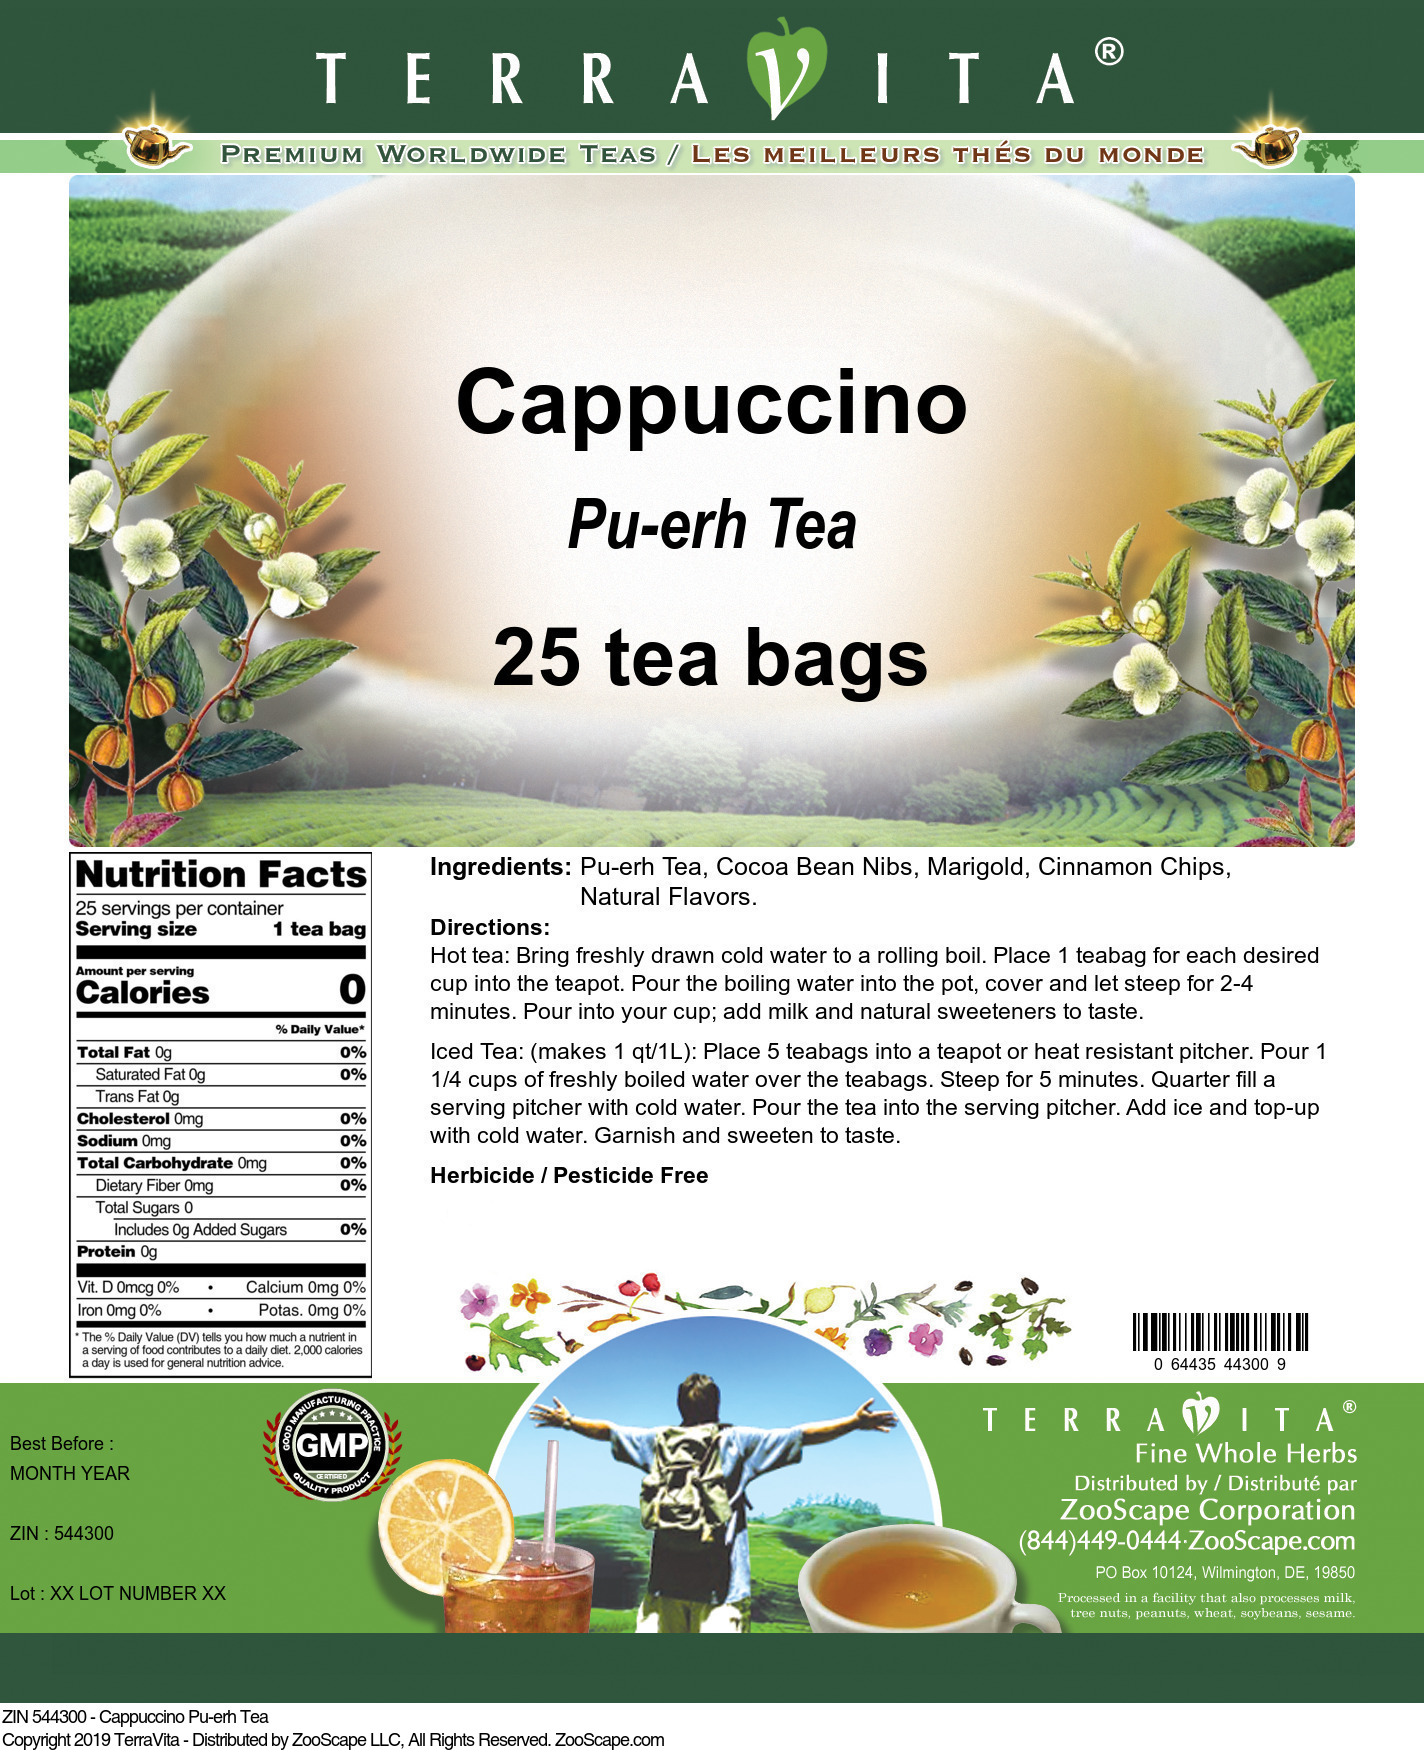 Cappuccino Pu-erh Tea - Label